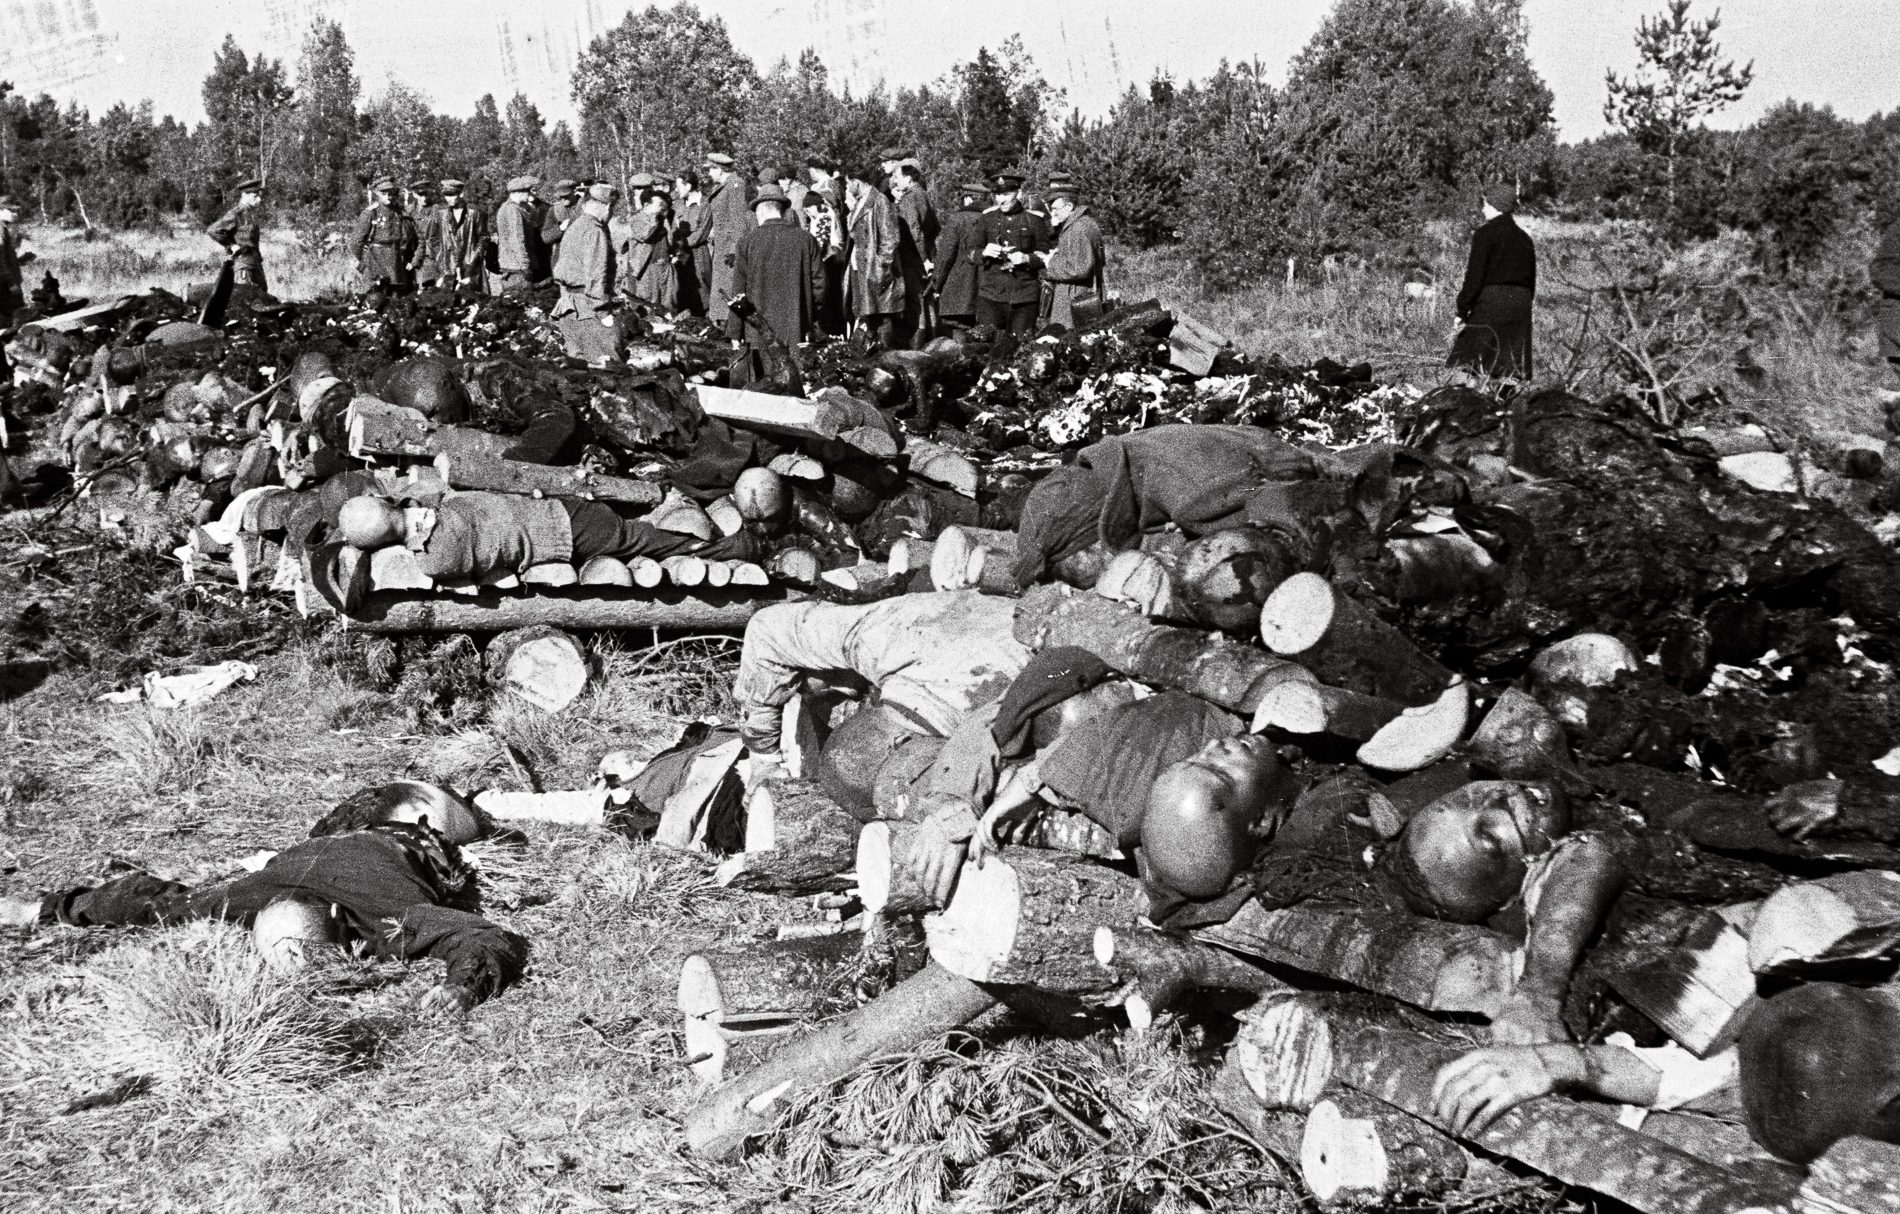 Представители прокуратуры Эстонской ССР у тел и останков, погибших узников концлагеря Клоога в 35 км от Таллина. Сентябрь 1944 г.